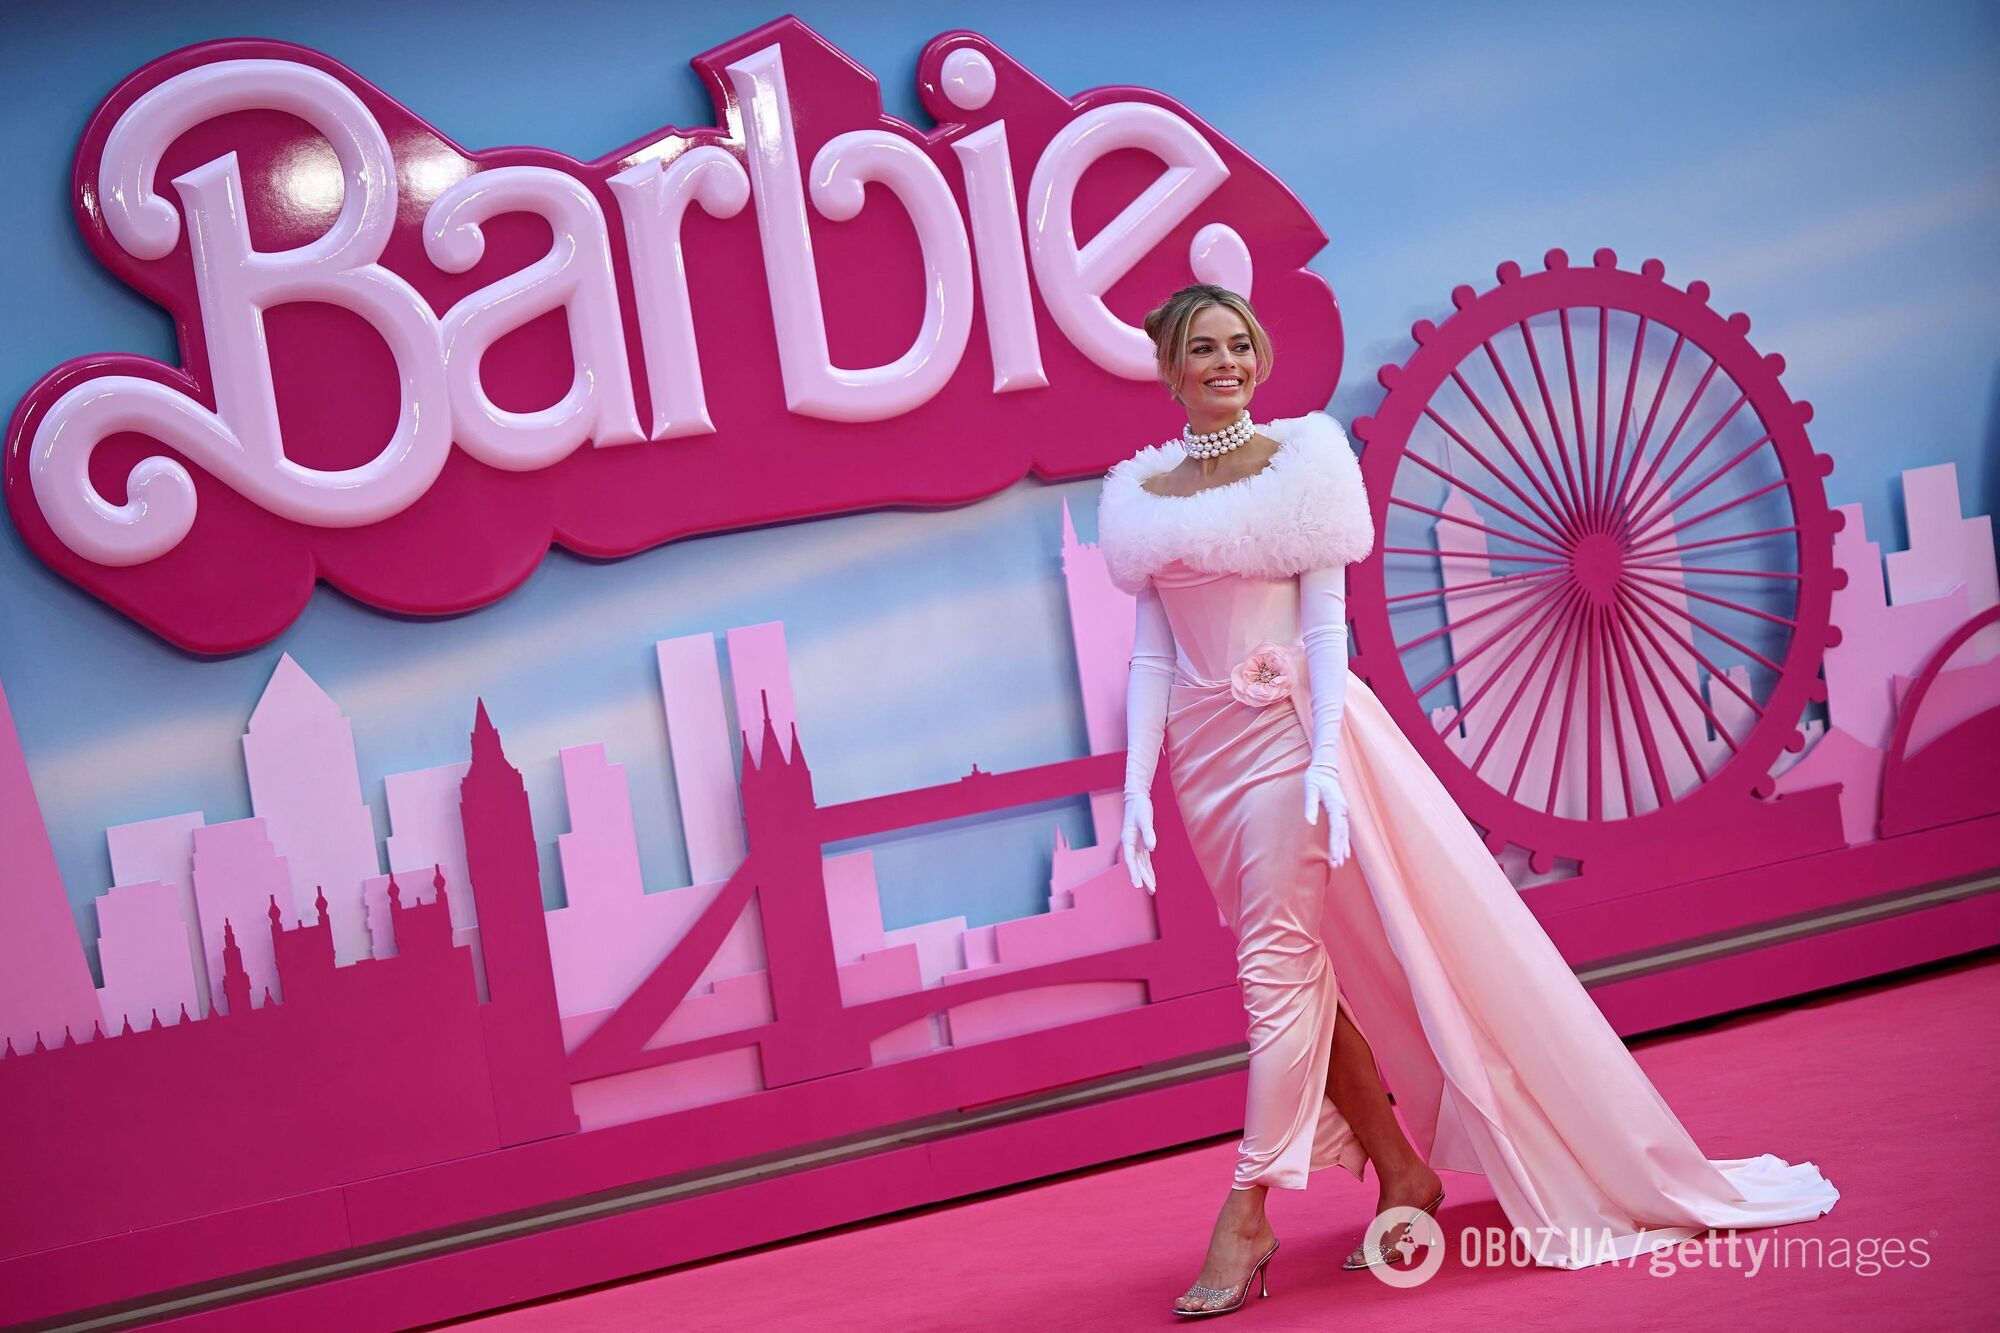 "Не способствует многодетности": священники России взбунтовались против кинохита "Барби"